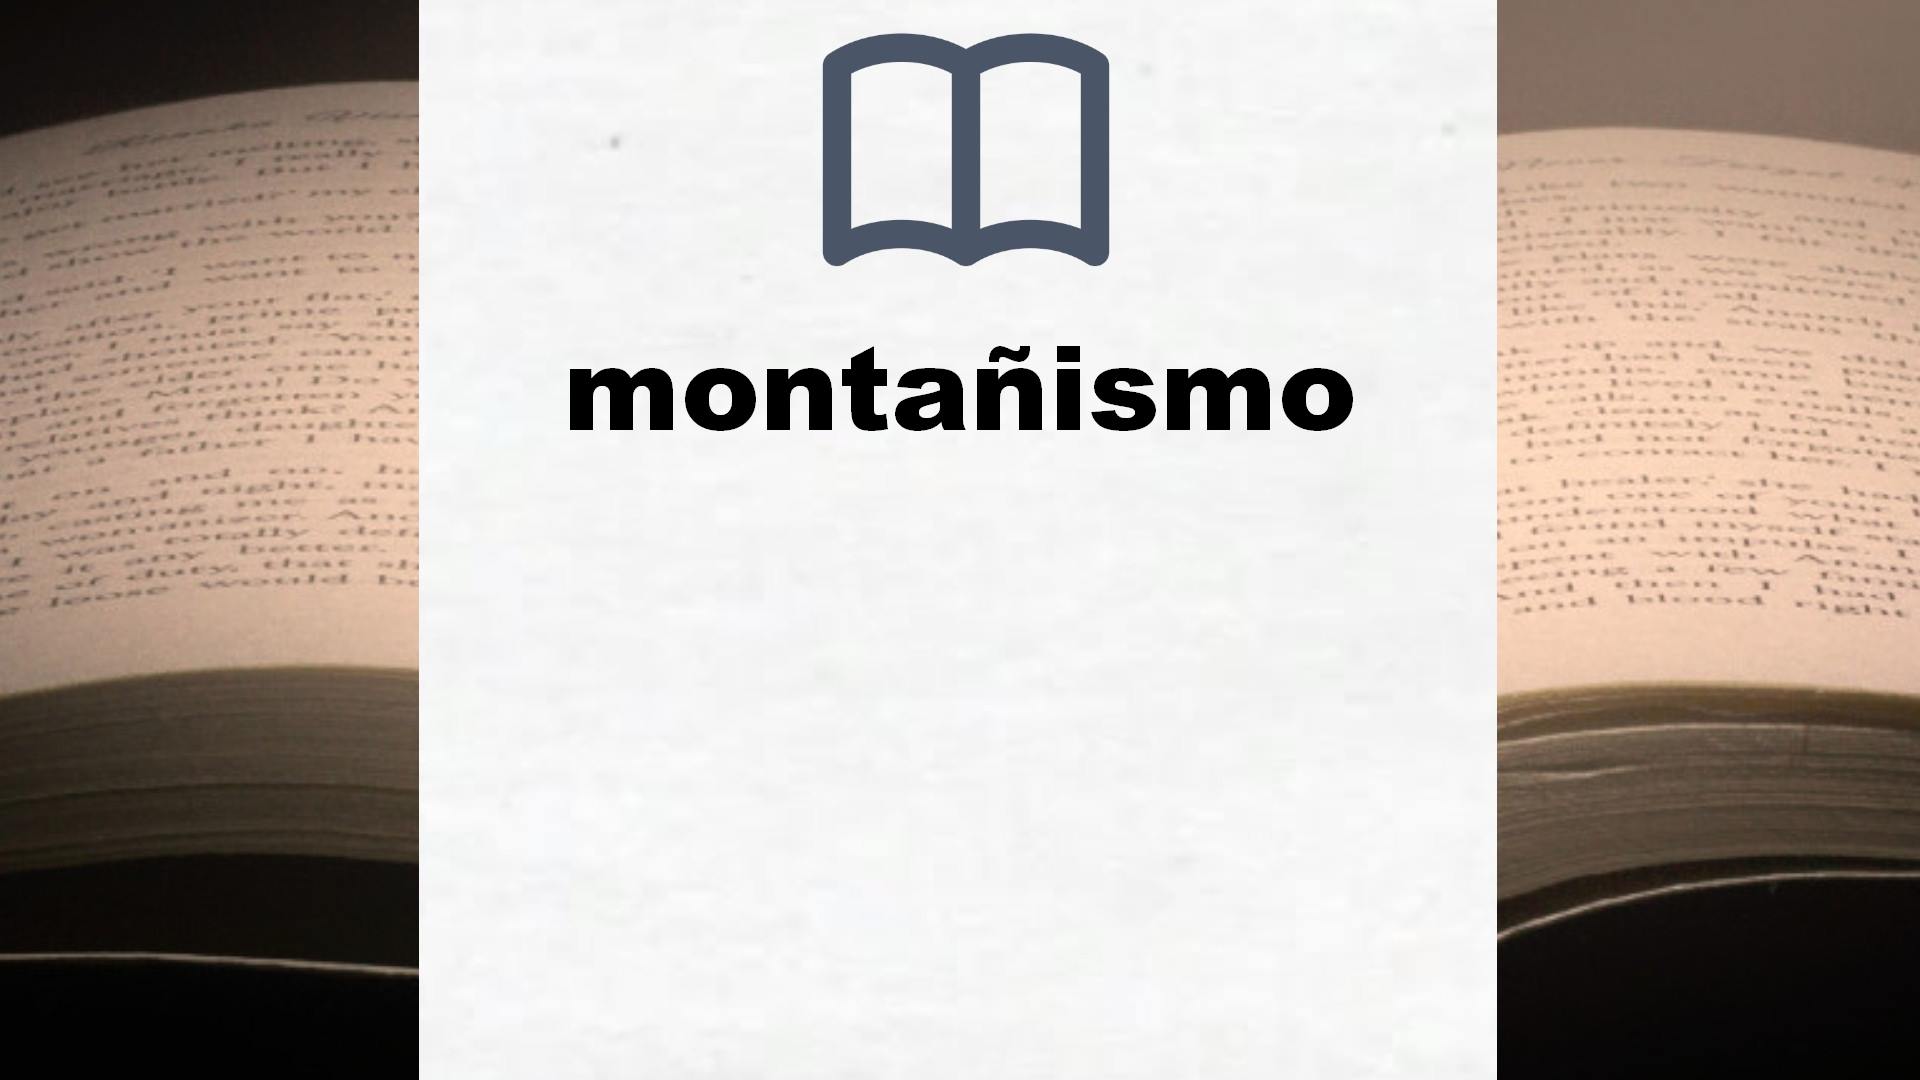 Libros sobre montañismo